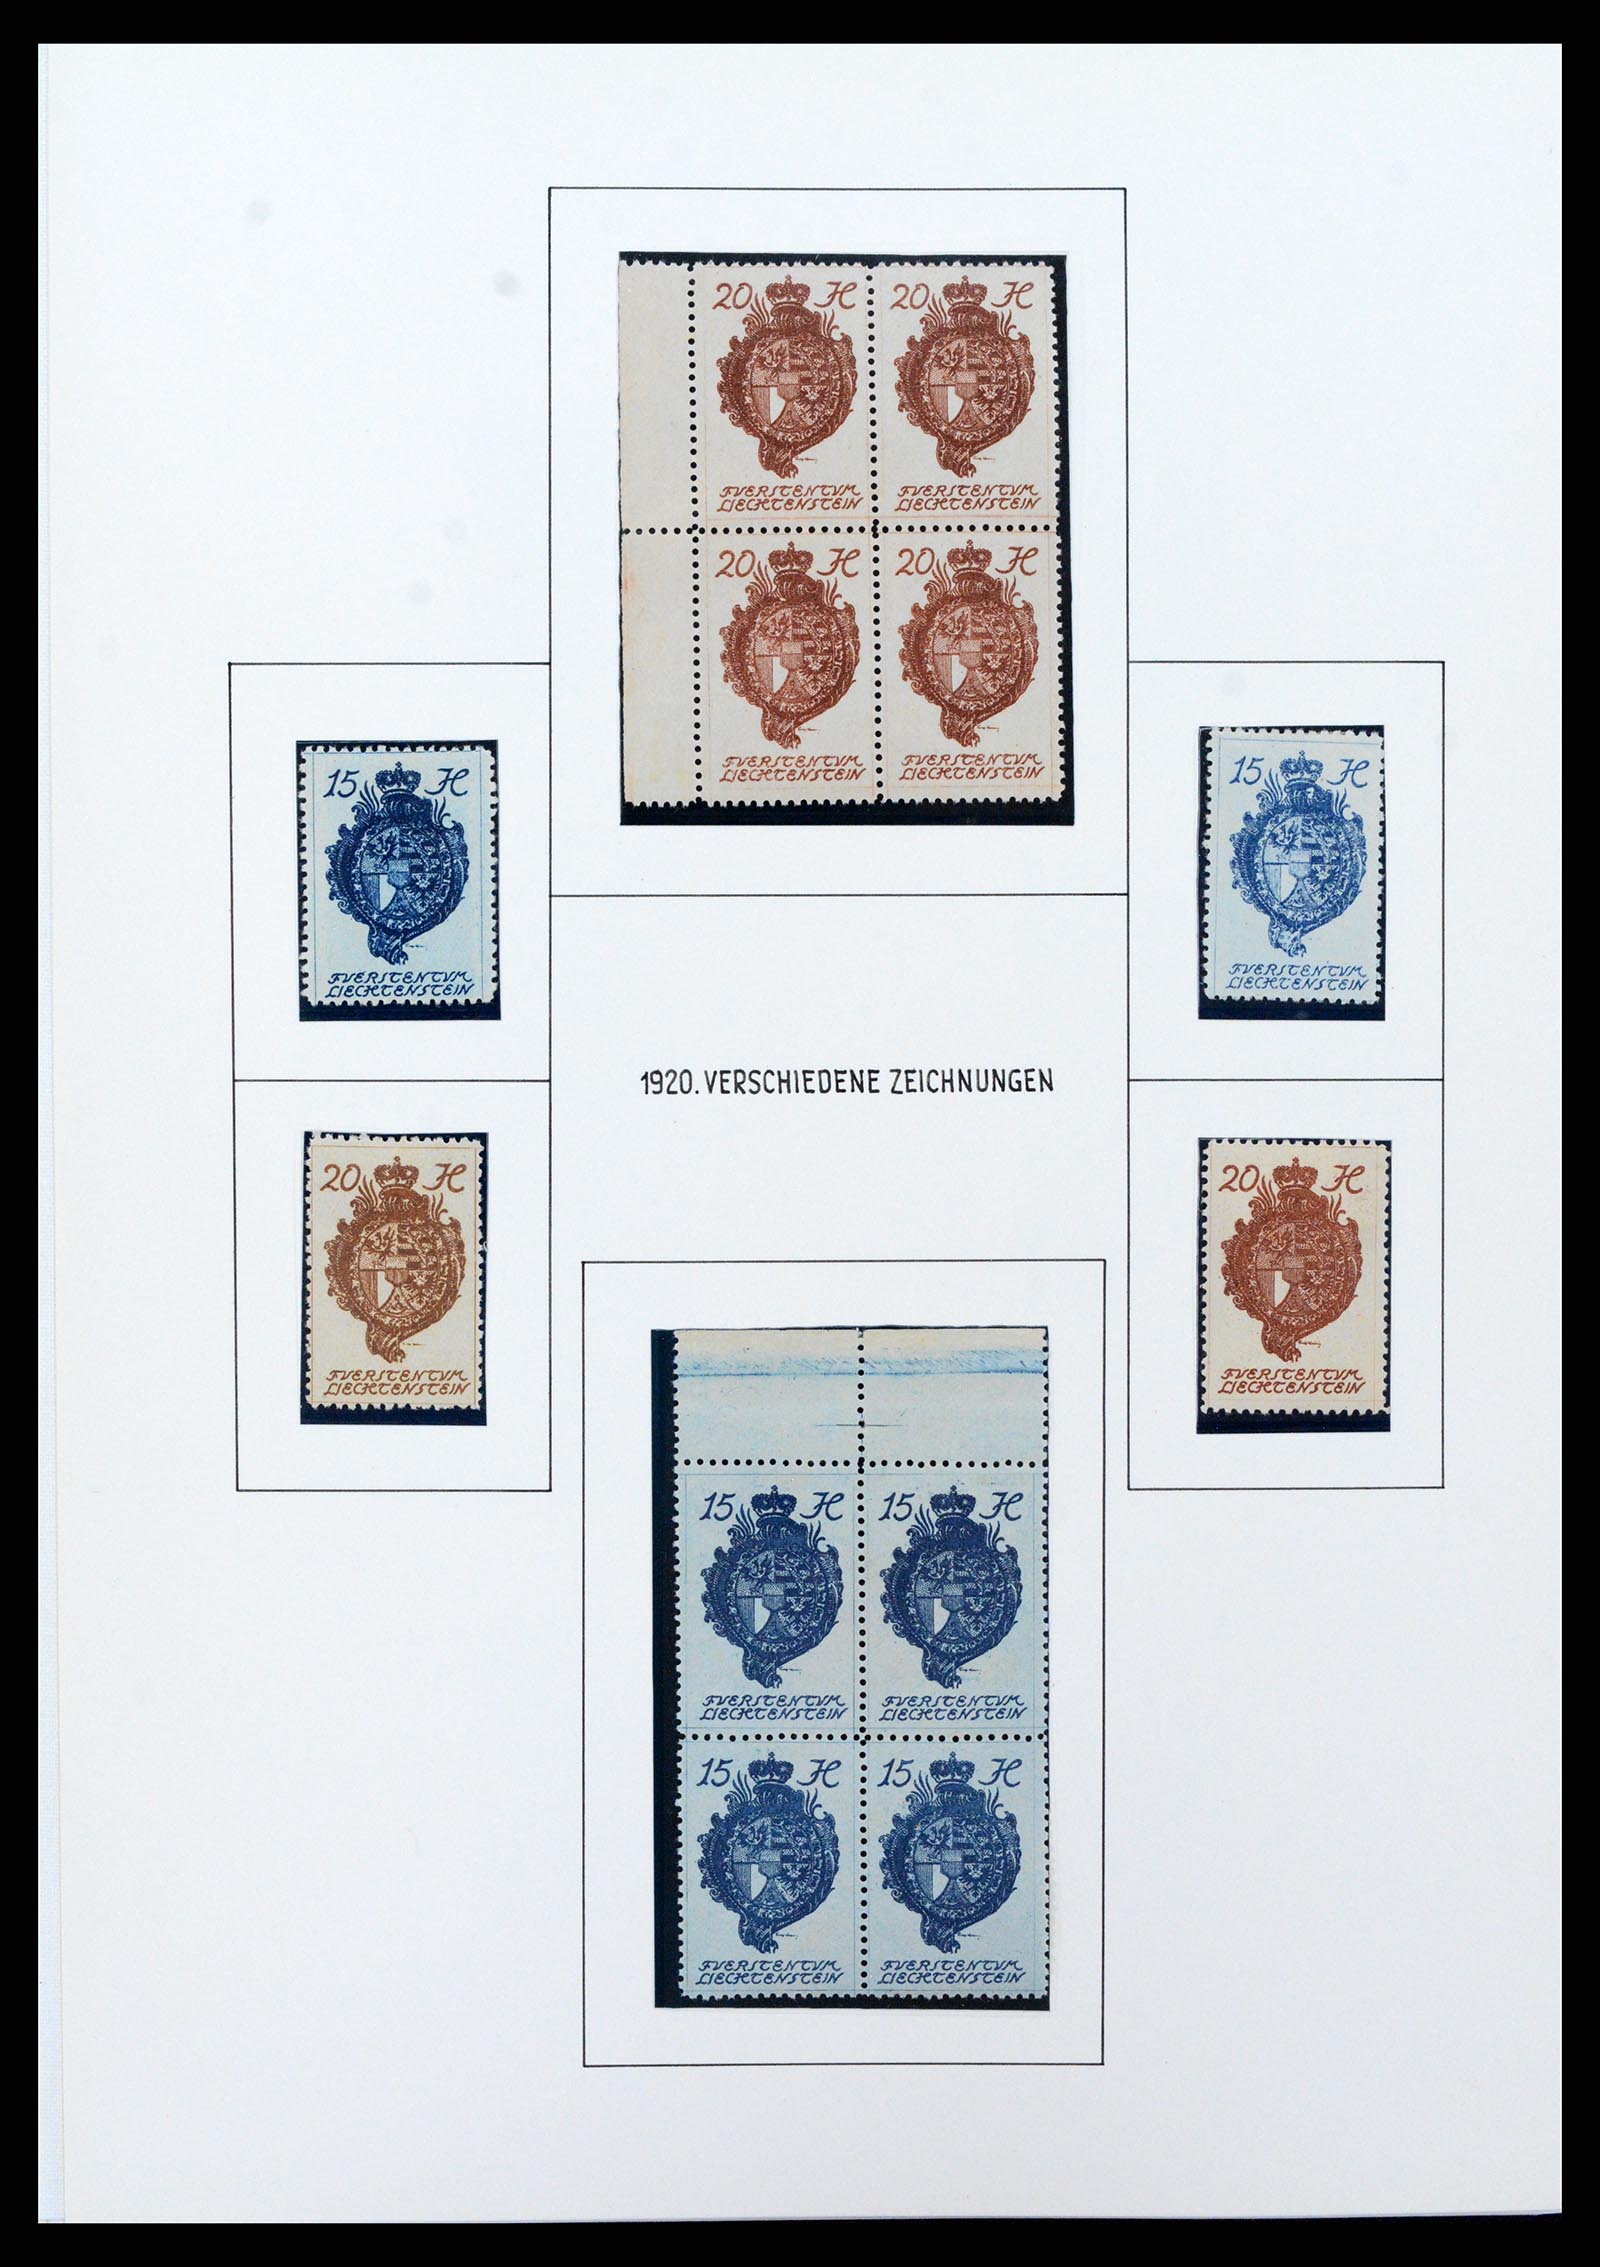 37150 0078 - Stamp collection 37150 Liechtenstein supercollection 1912-1962.